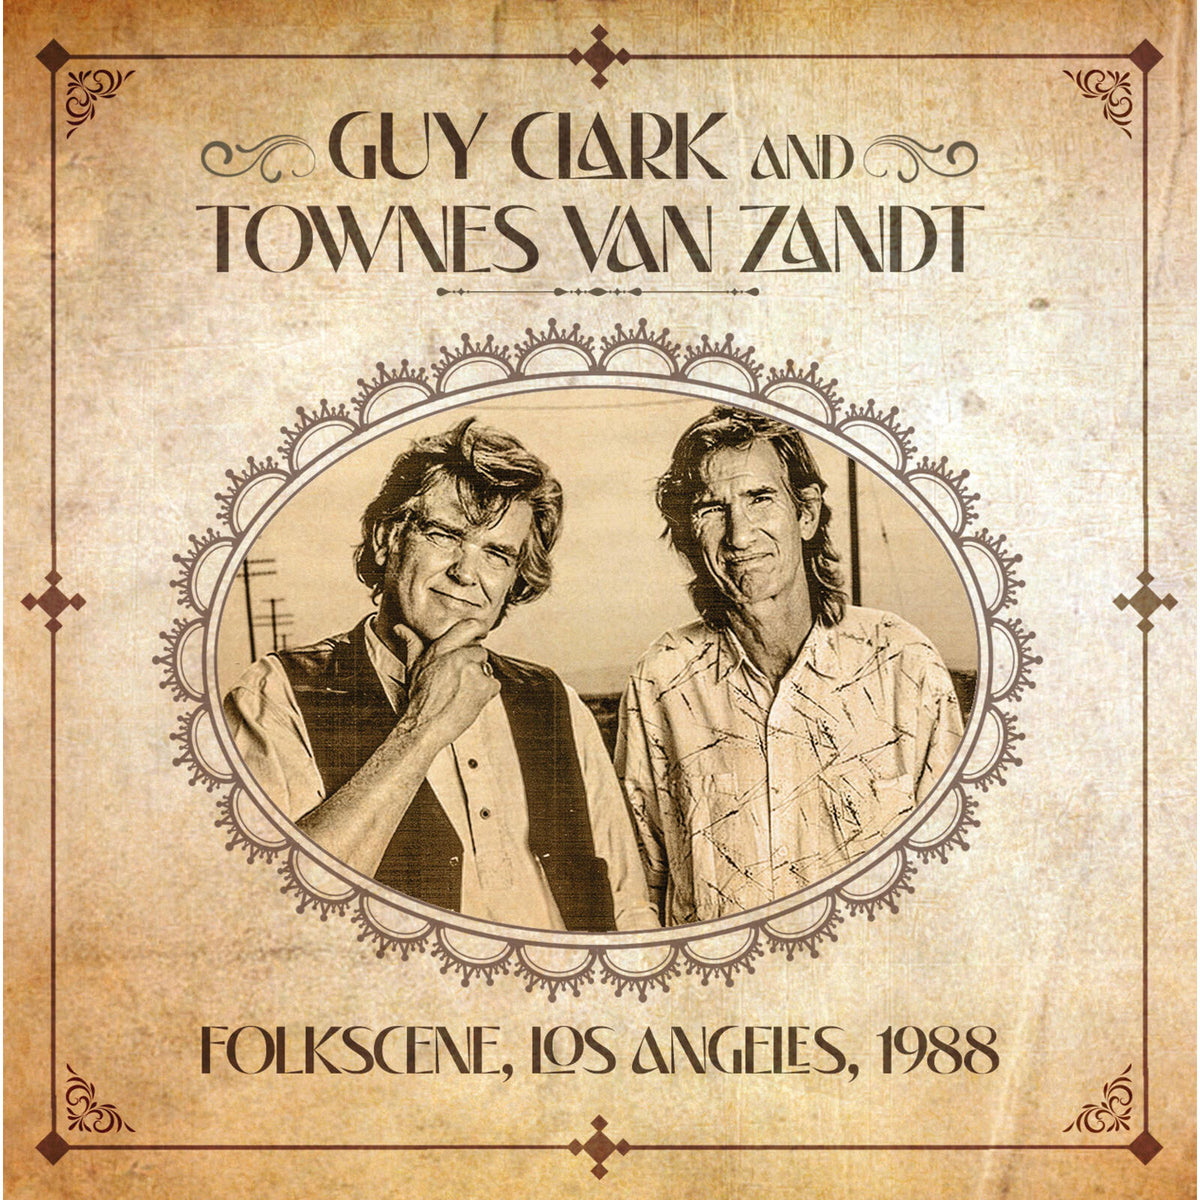 Guy Clark and Townes Van Zandt - Folkscene Los Angeles 1988 - HSPCD2007